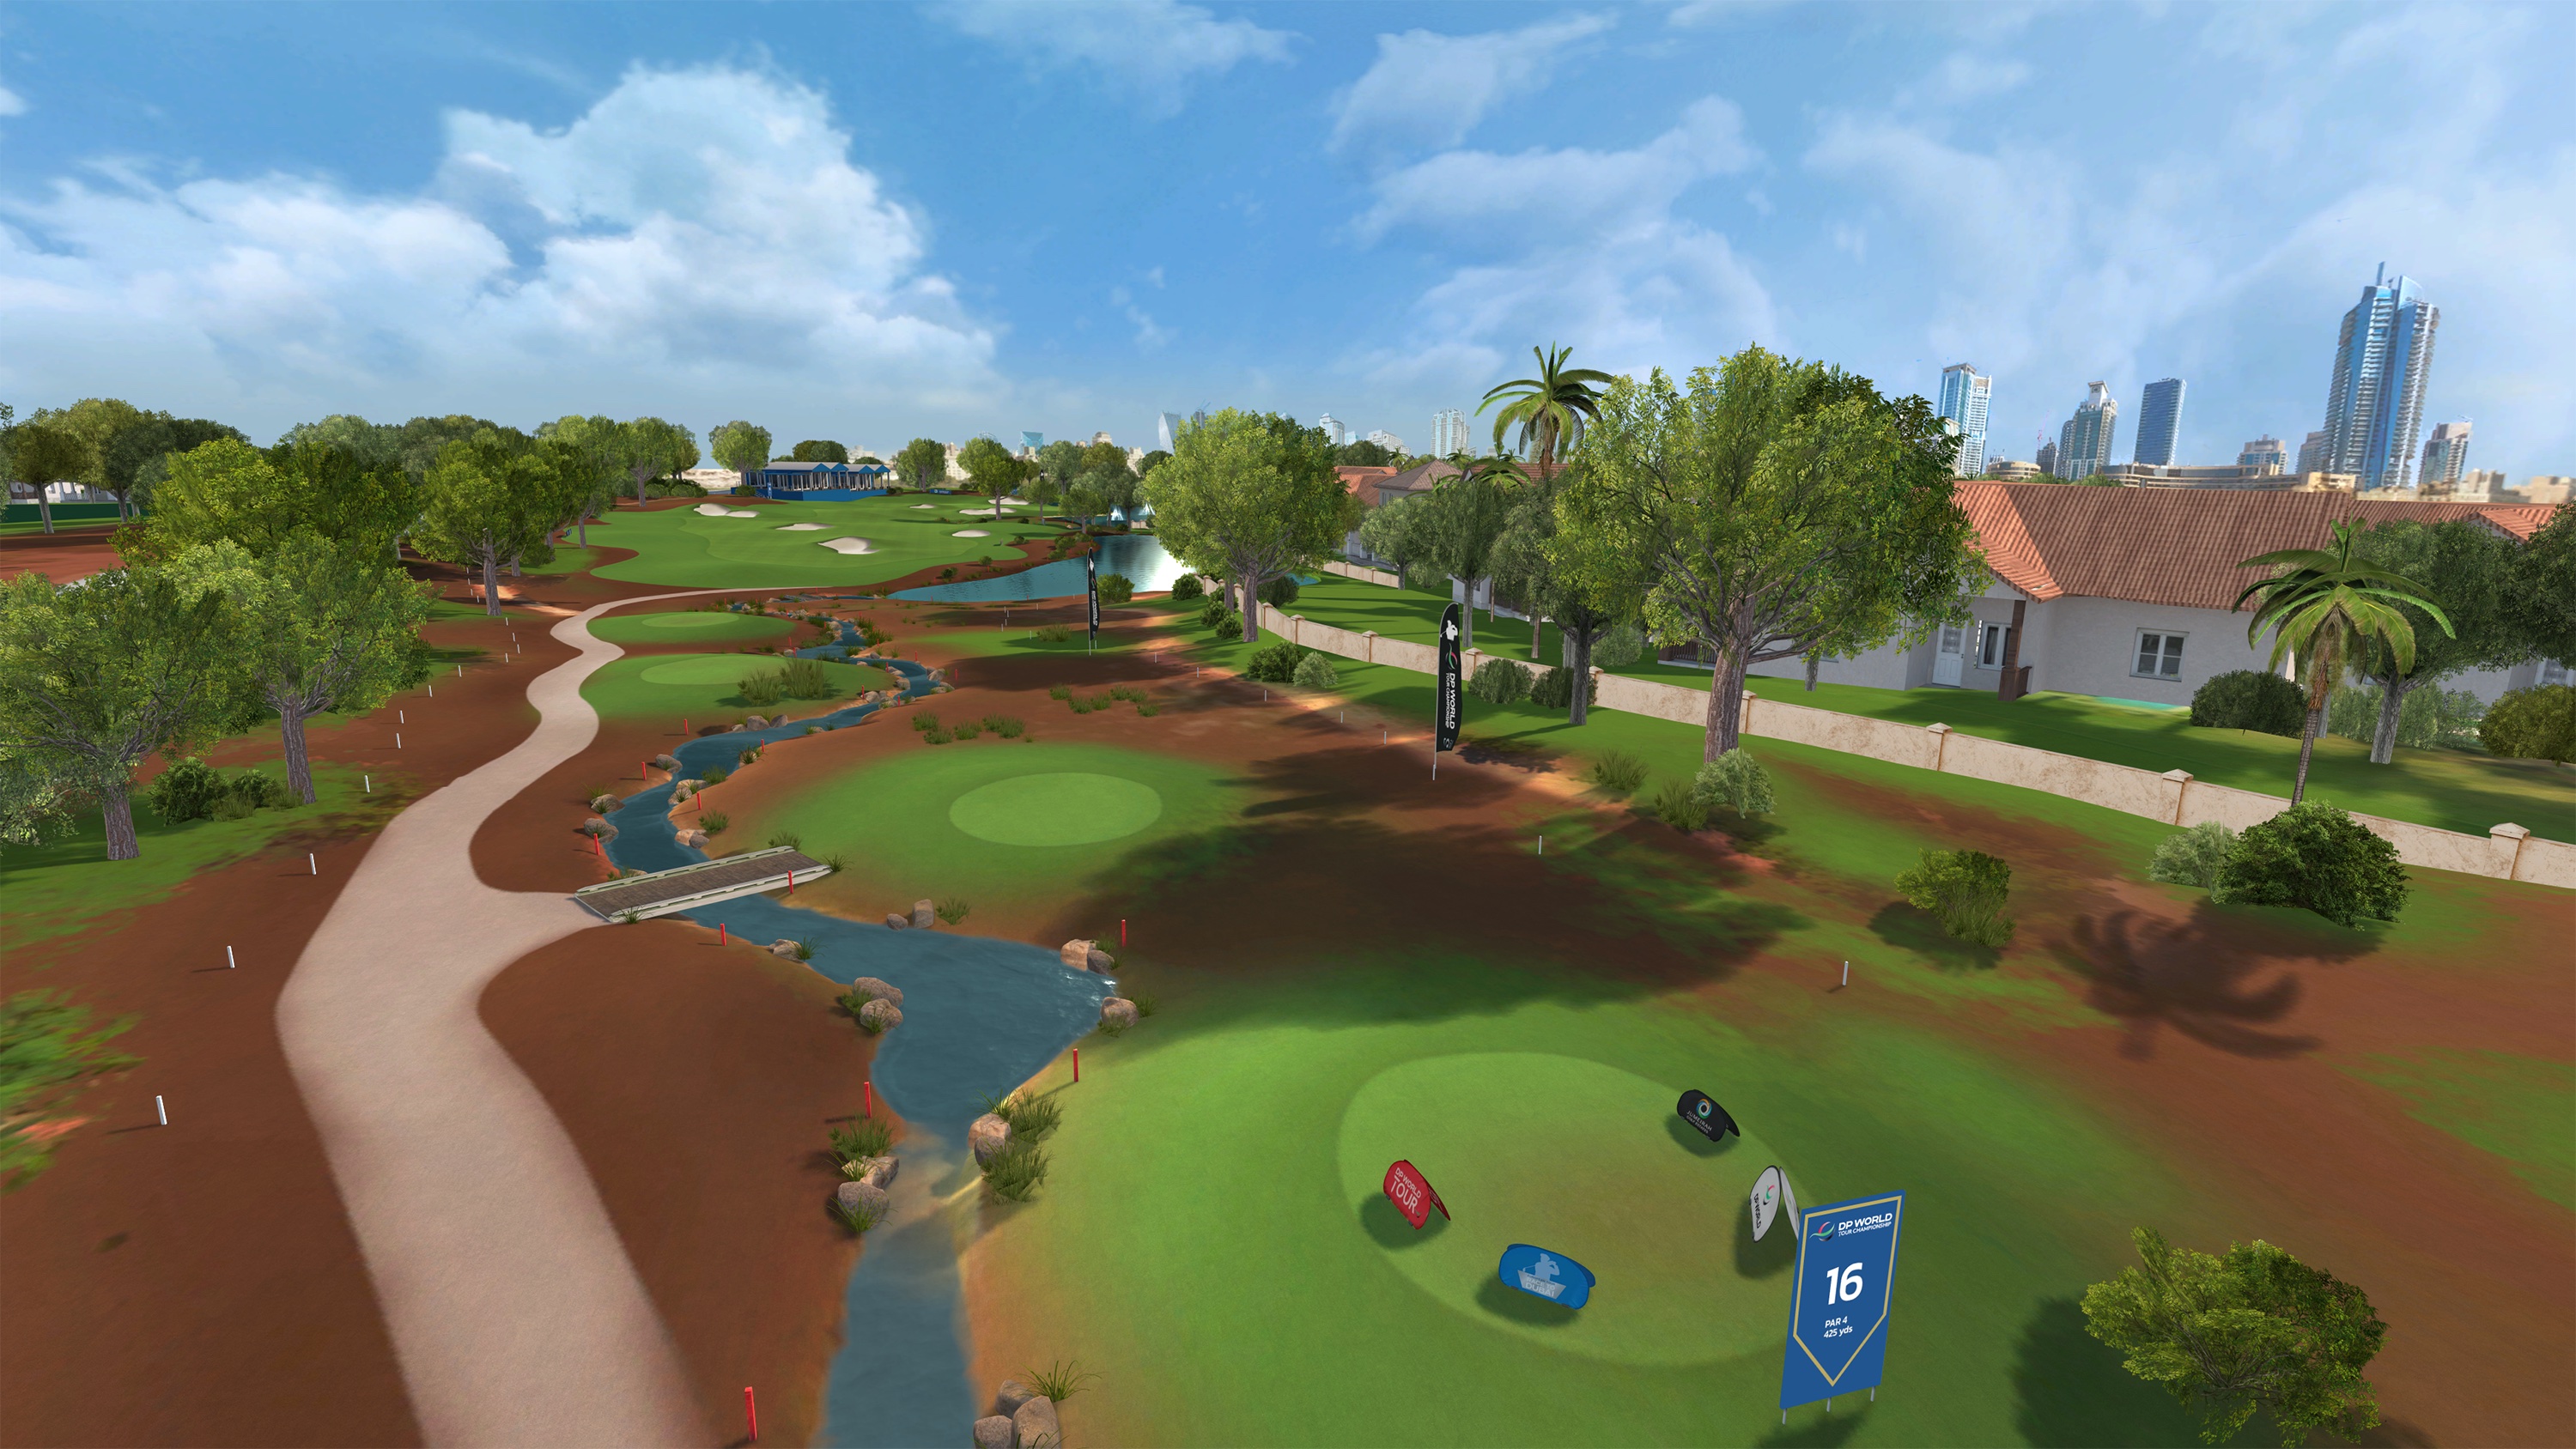 Jumeirah Golf Estates Golf5 Hole 16 Earth Course Virtual Reality